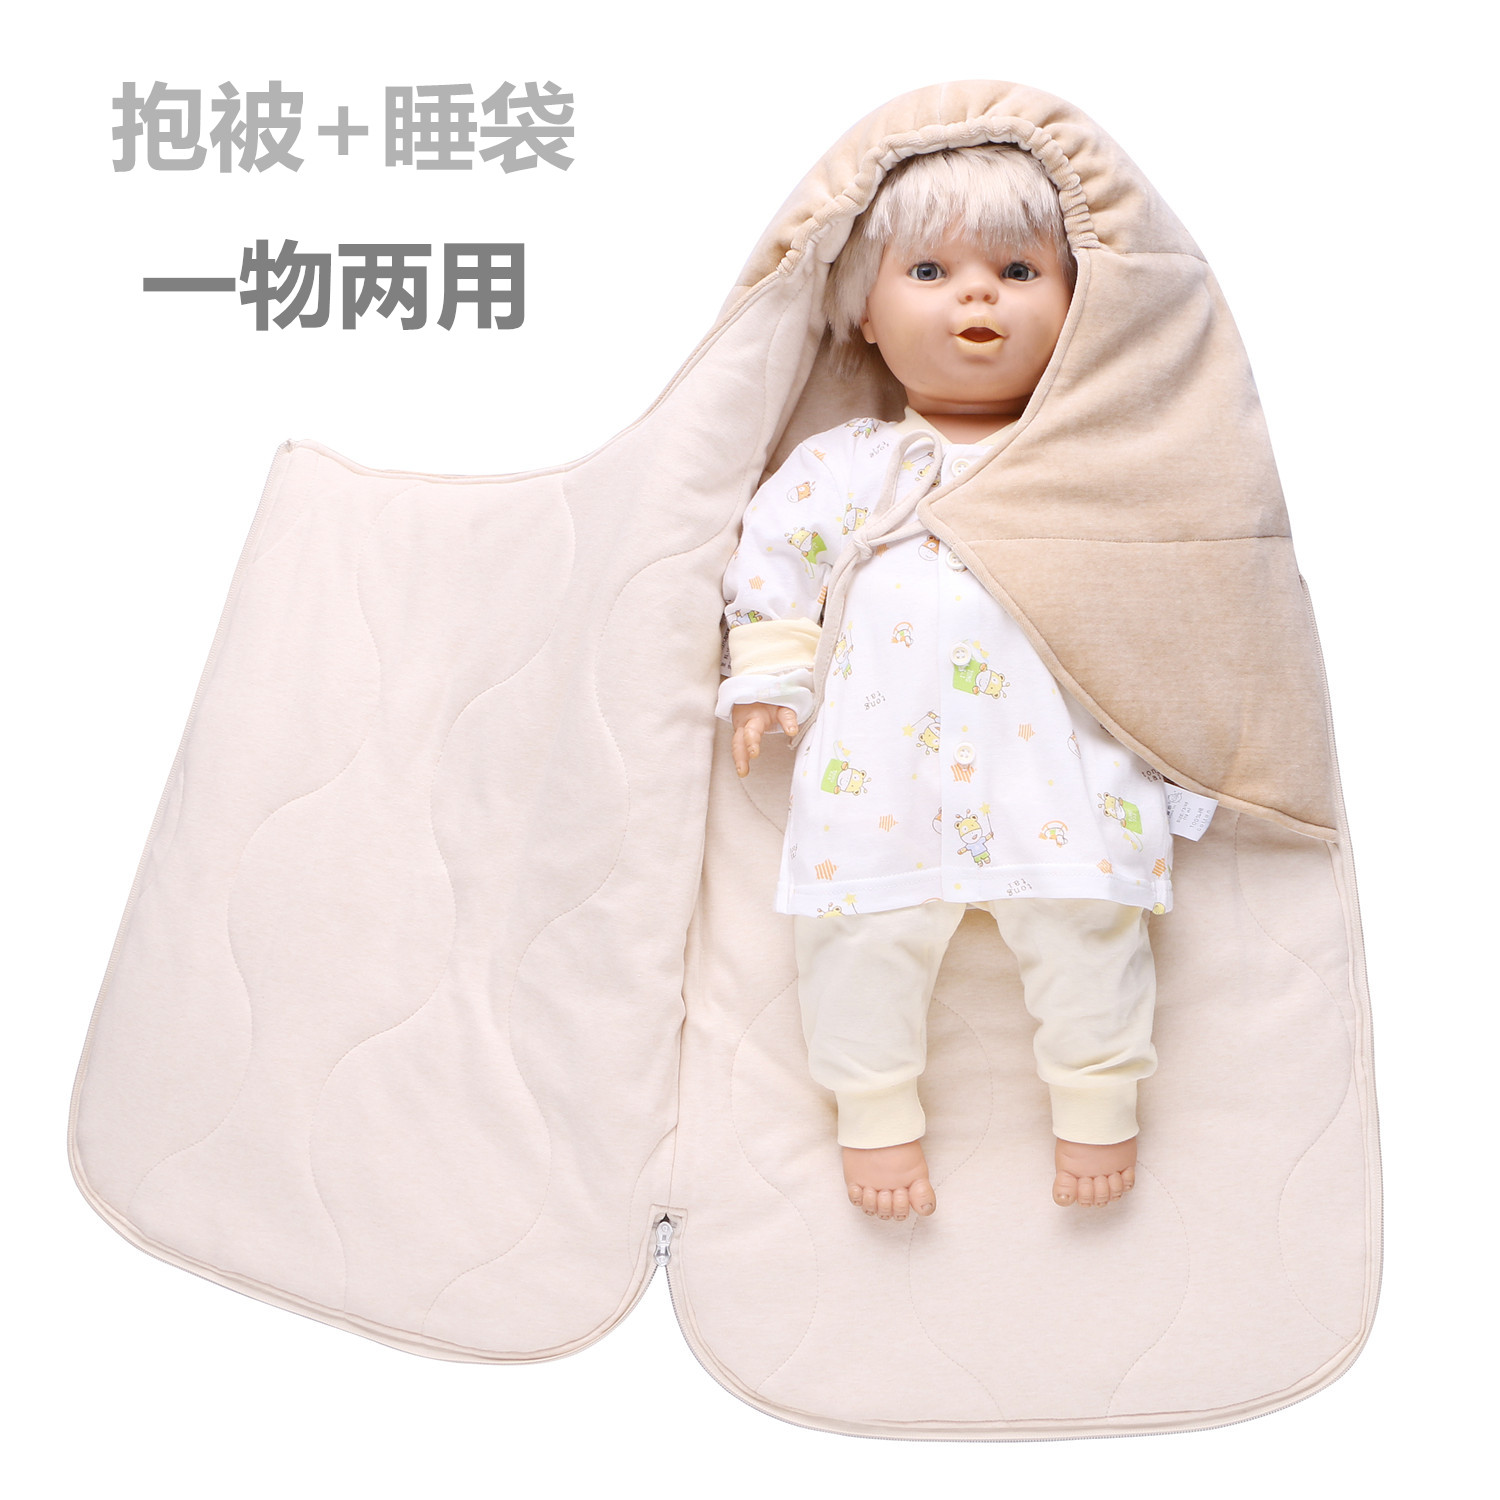 婴儿抱被睡袋两用宝宝有机棉防踢被新生儿纯棉包被抱毯春秋冬季厚折扣优惠信息